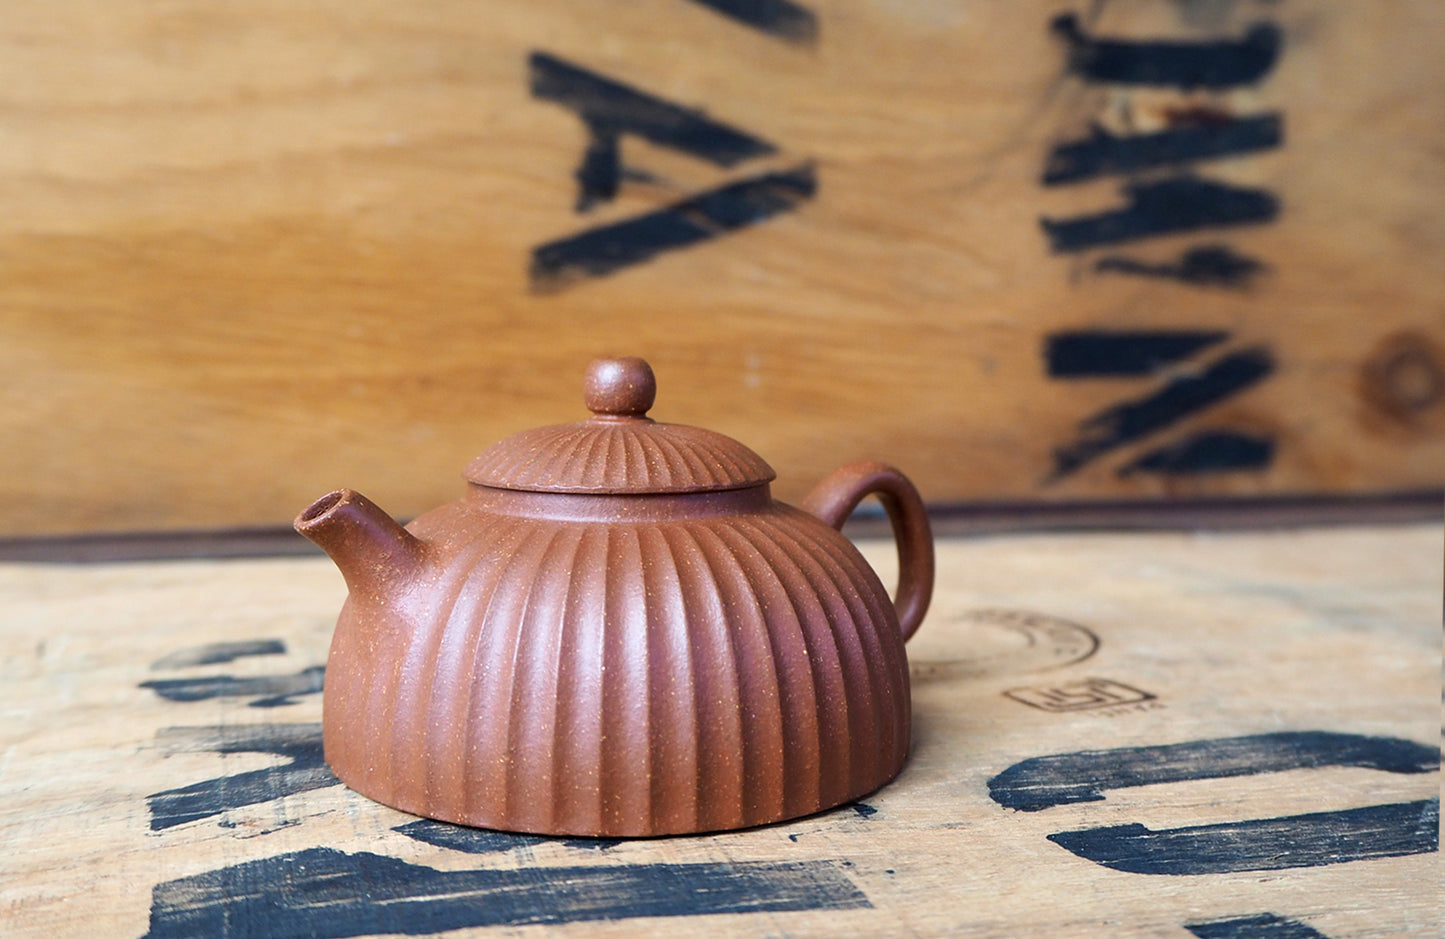 Jin Wen Half Moon Yixing Teapot by Masters Gao & Xu's Studio